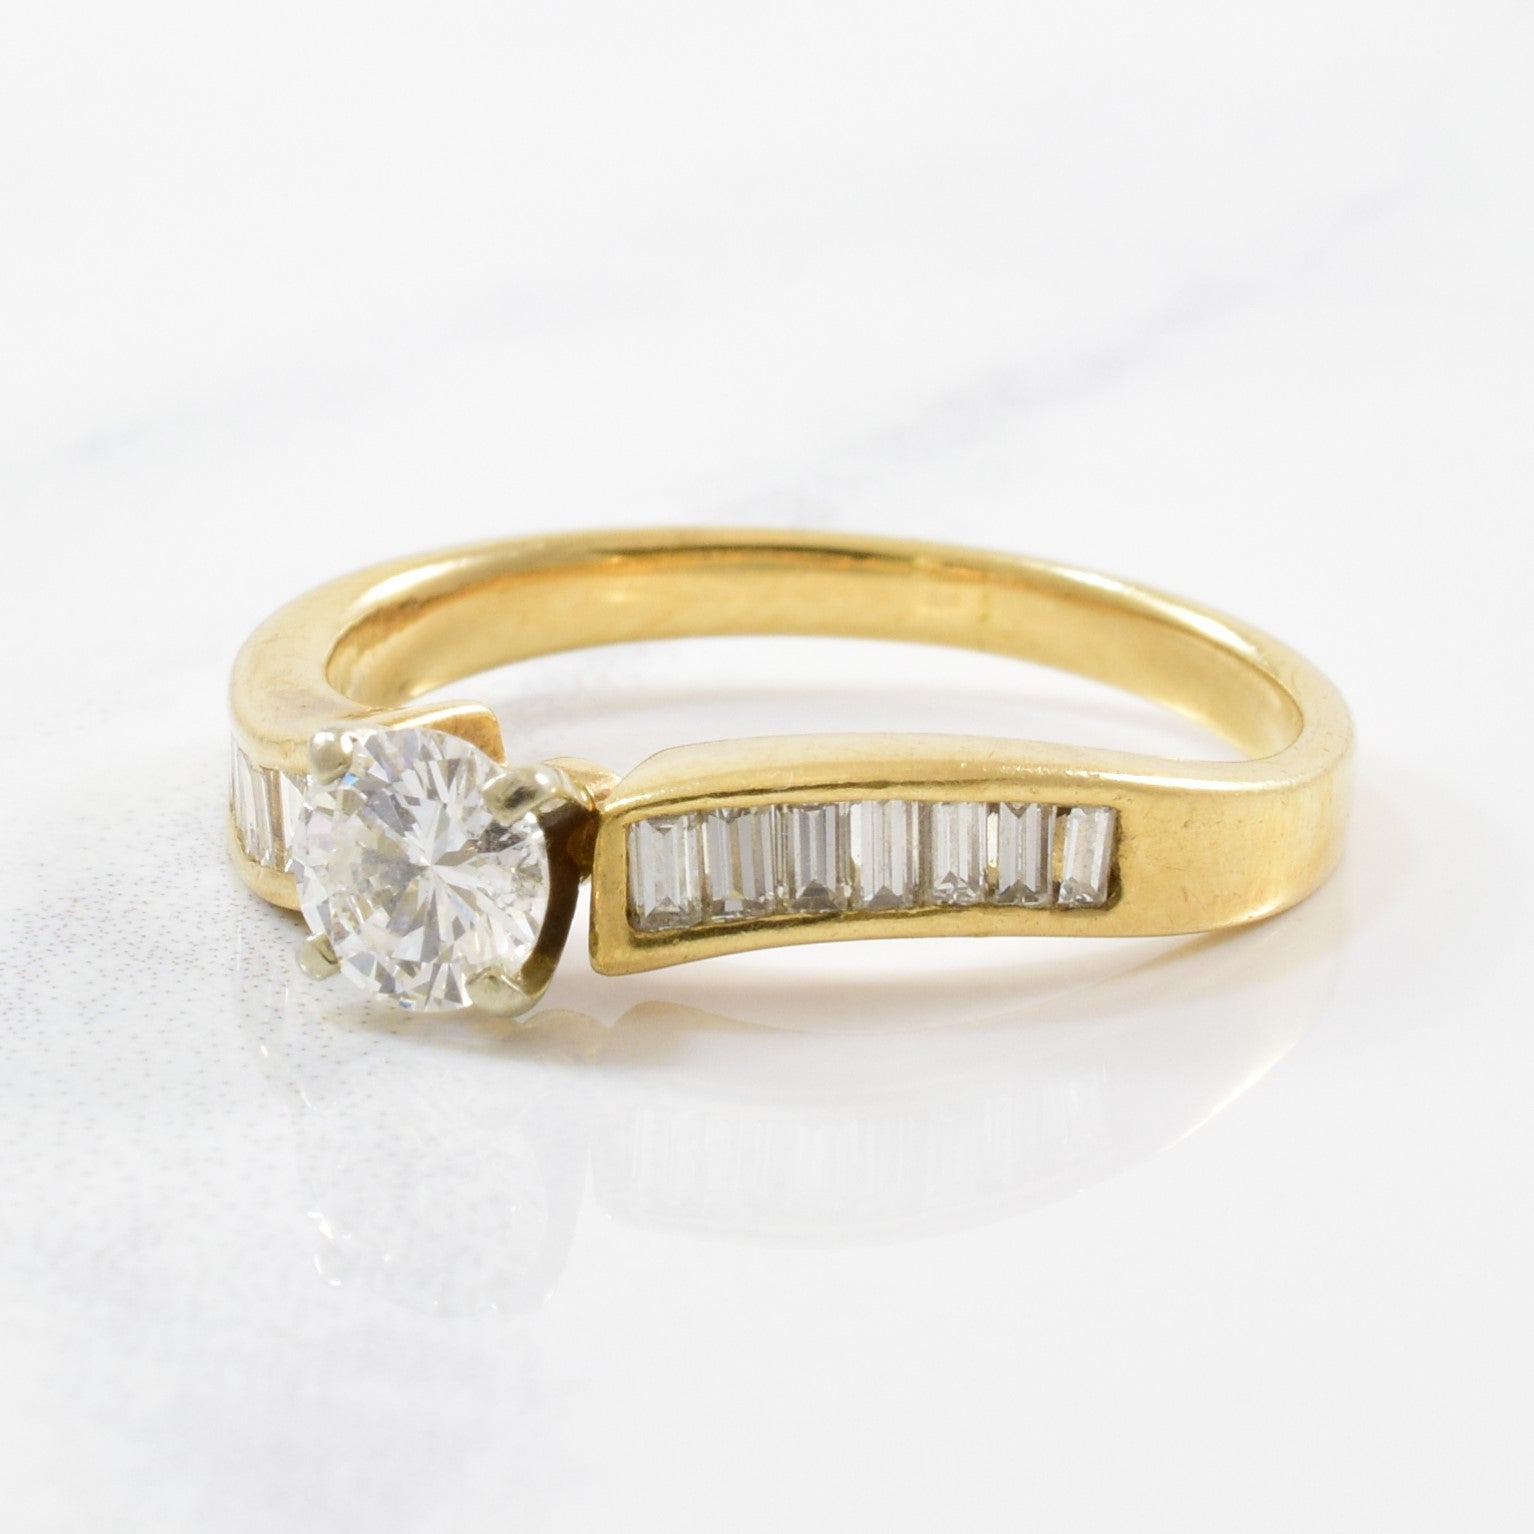 Diamond Engagement Ring With Baguette Cut Accents | 0.57ctw | SZ 4.5 |